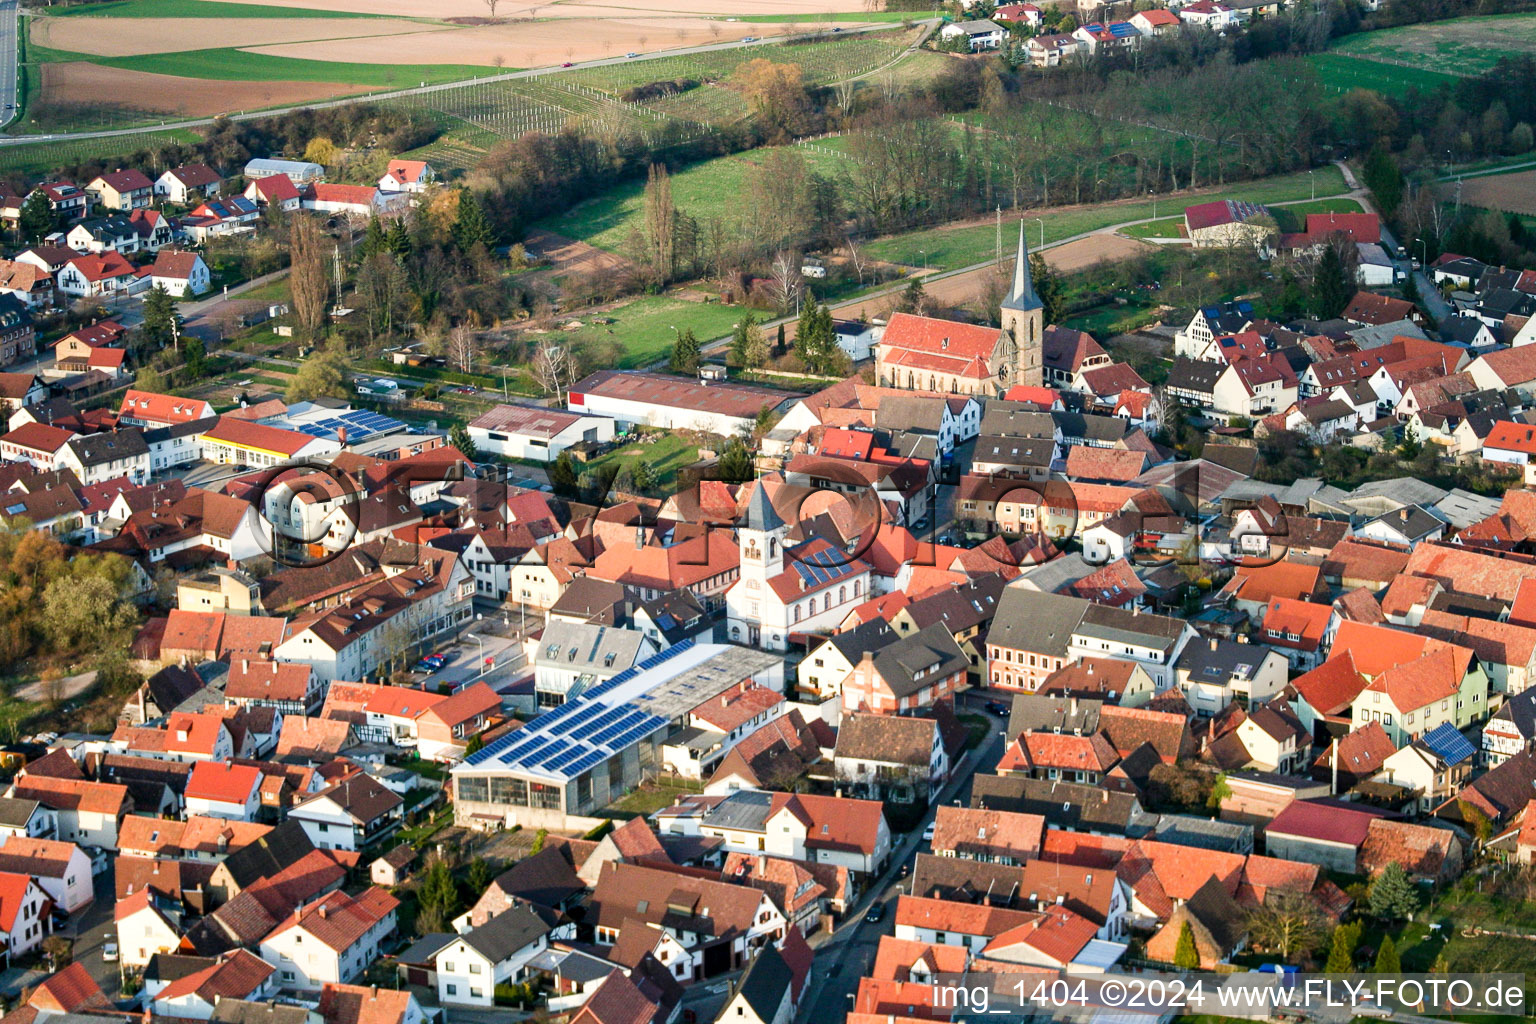 Photographie aérienne de Vue des rues et des maisons des quartiers résidentiels à le quartier Ingenheim in Billigheim-Ingenheim dans le département Rhénanie-Palatinat, Allemagne